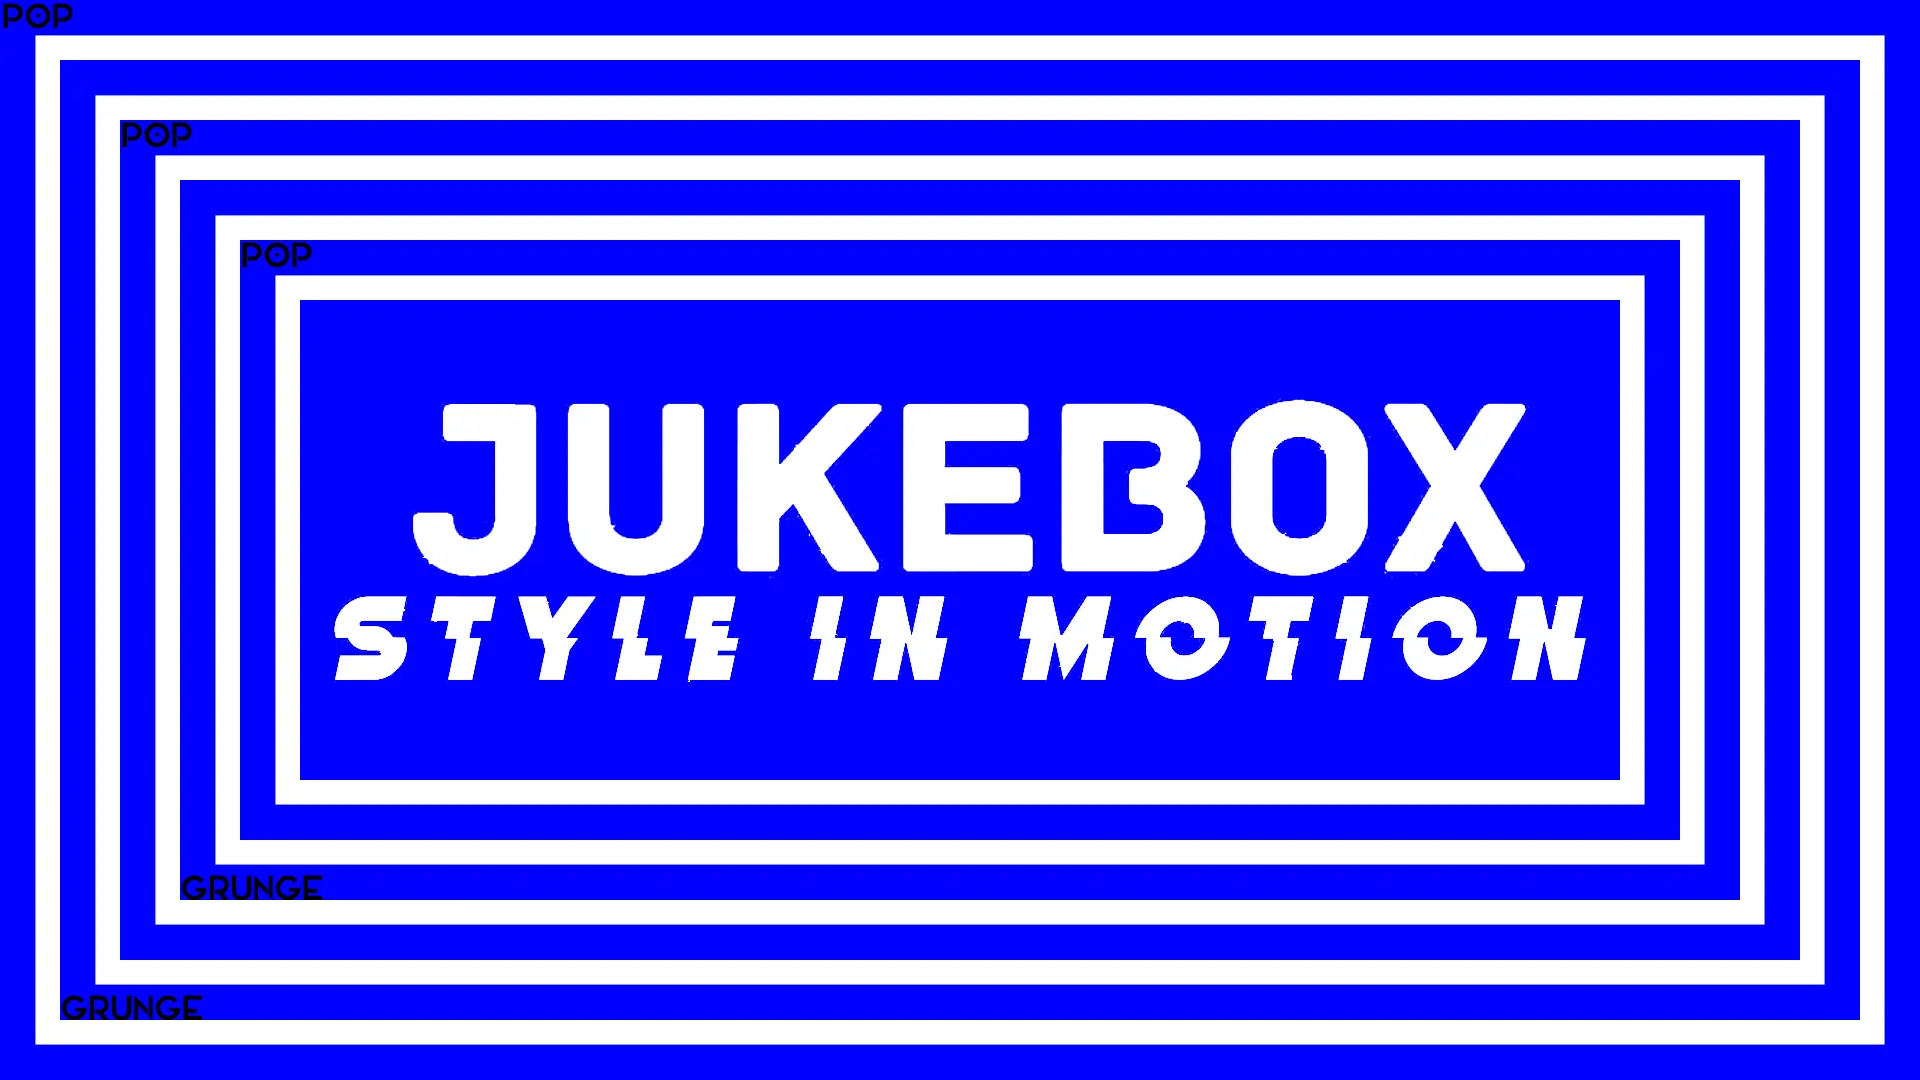 jukebox cover